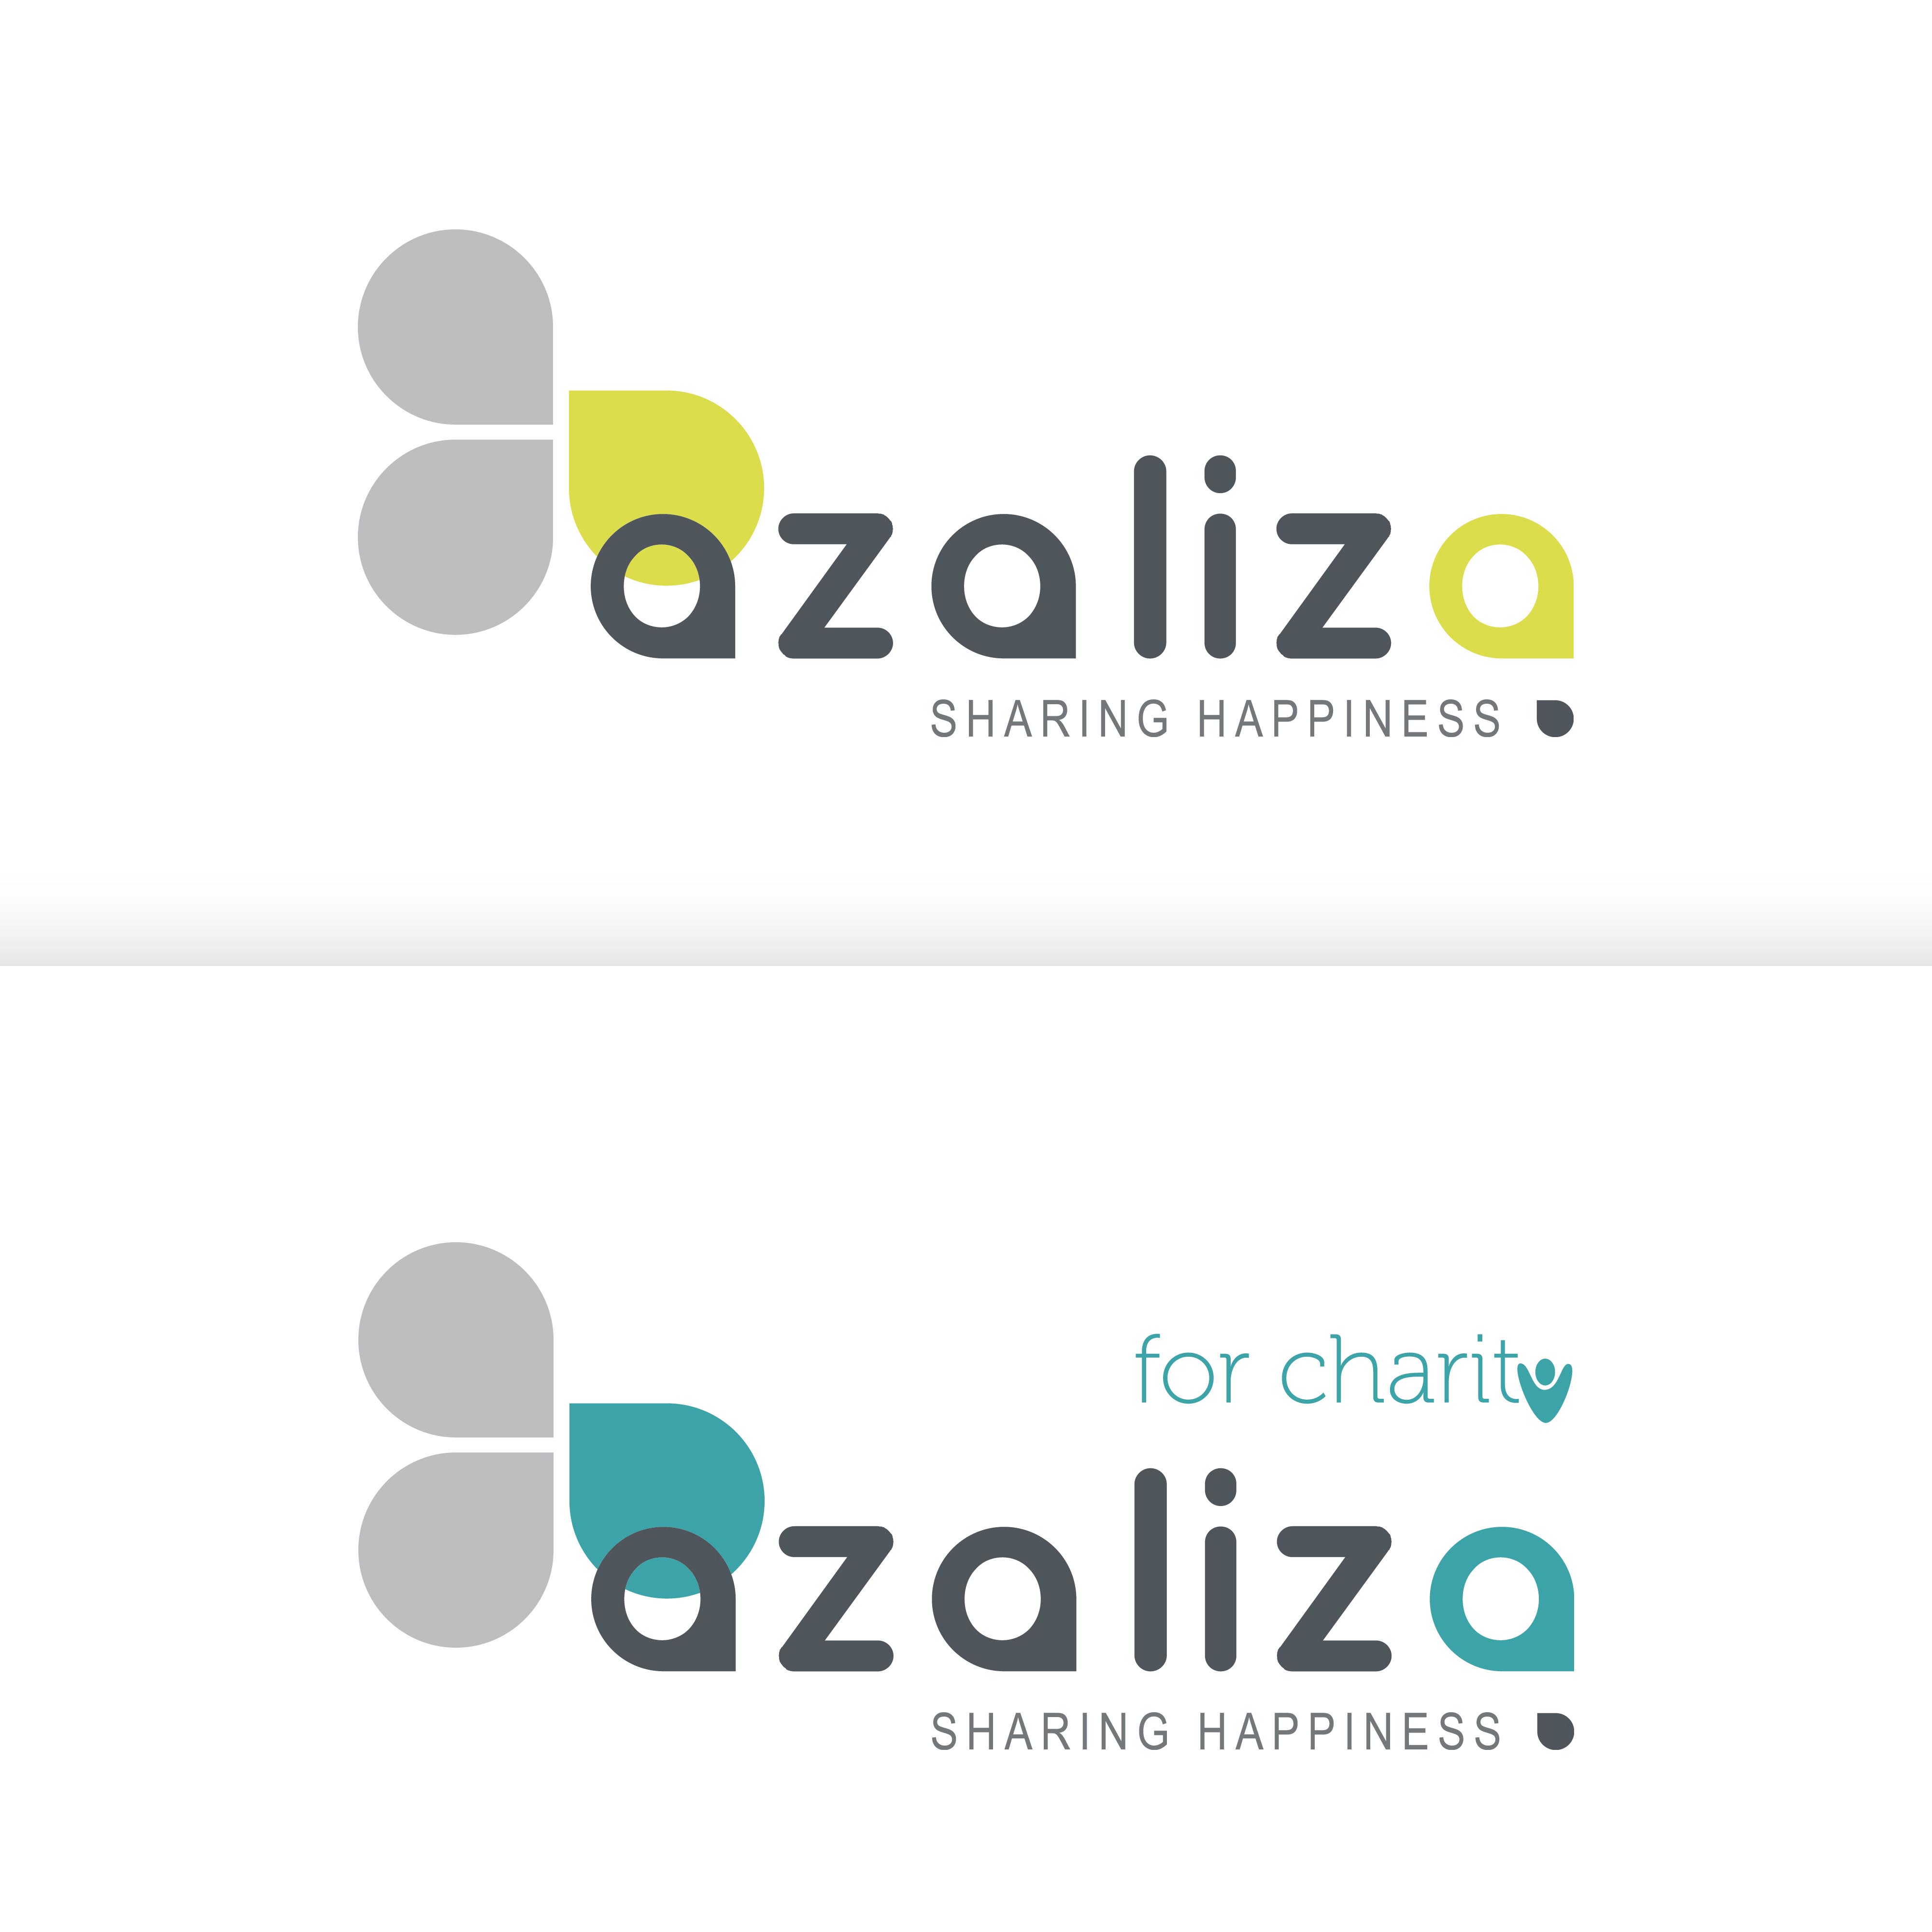 Création logo pour azaliza et azaliza for charity - Réalisation de listes de cadeaux ou de dons